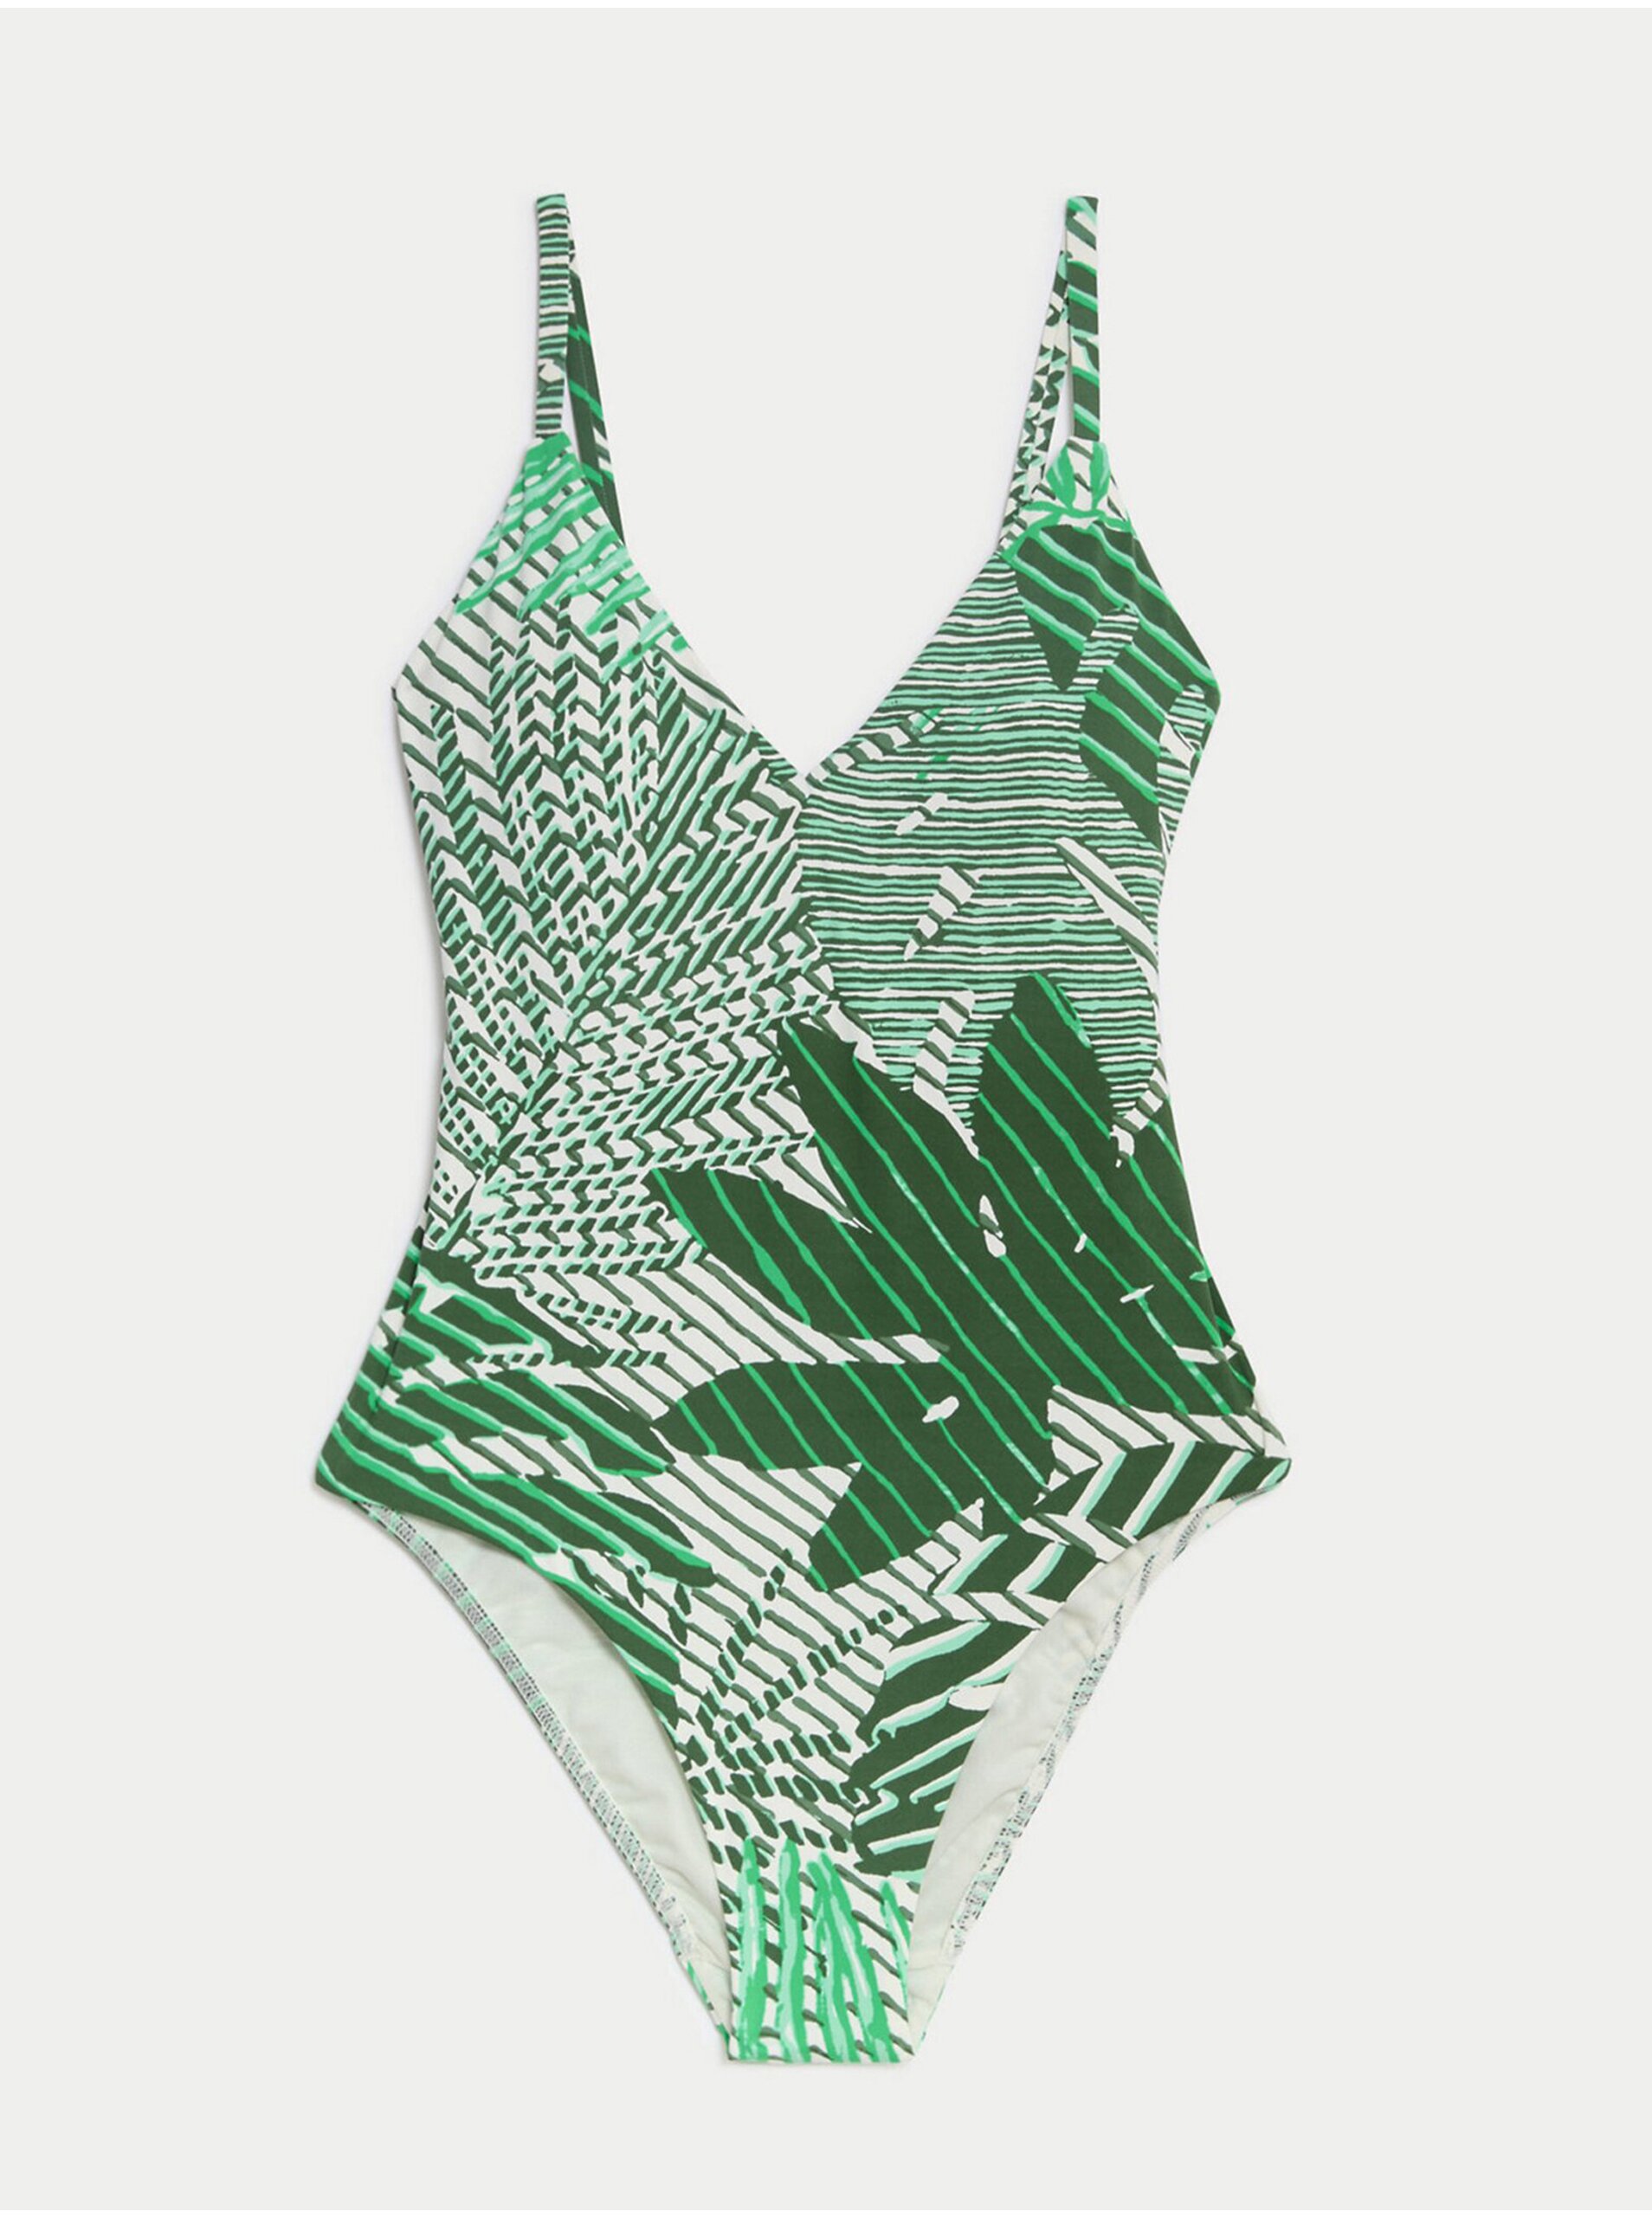 Lacno Zelené dámske vzorované plavky formujúce bruško Marks & Spencer